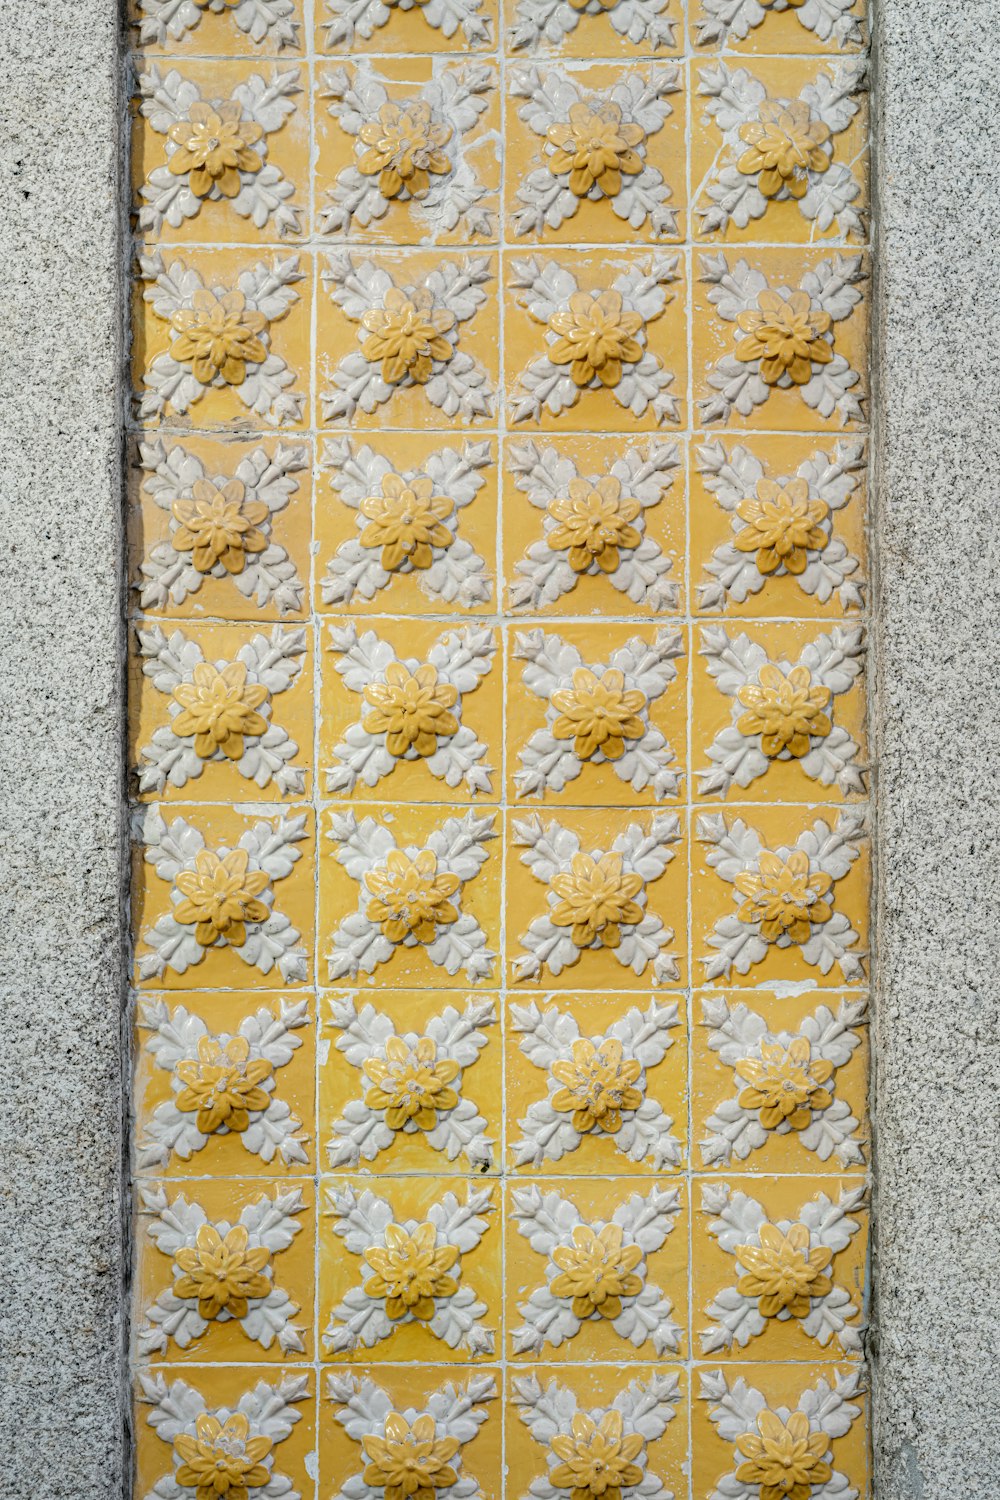 흰색 꽃이있는 노란색과 흰색 타일